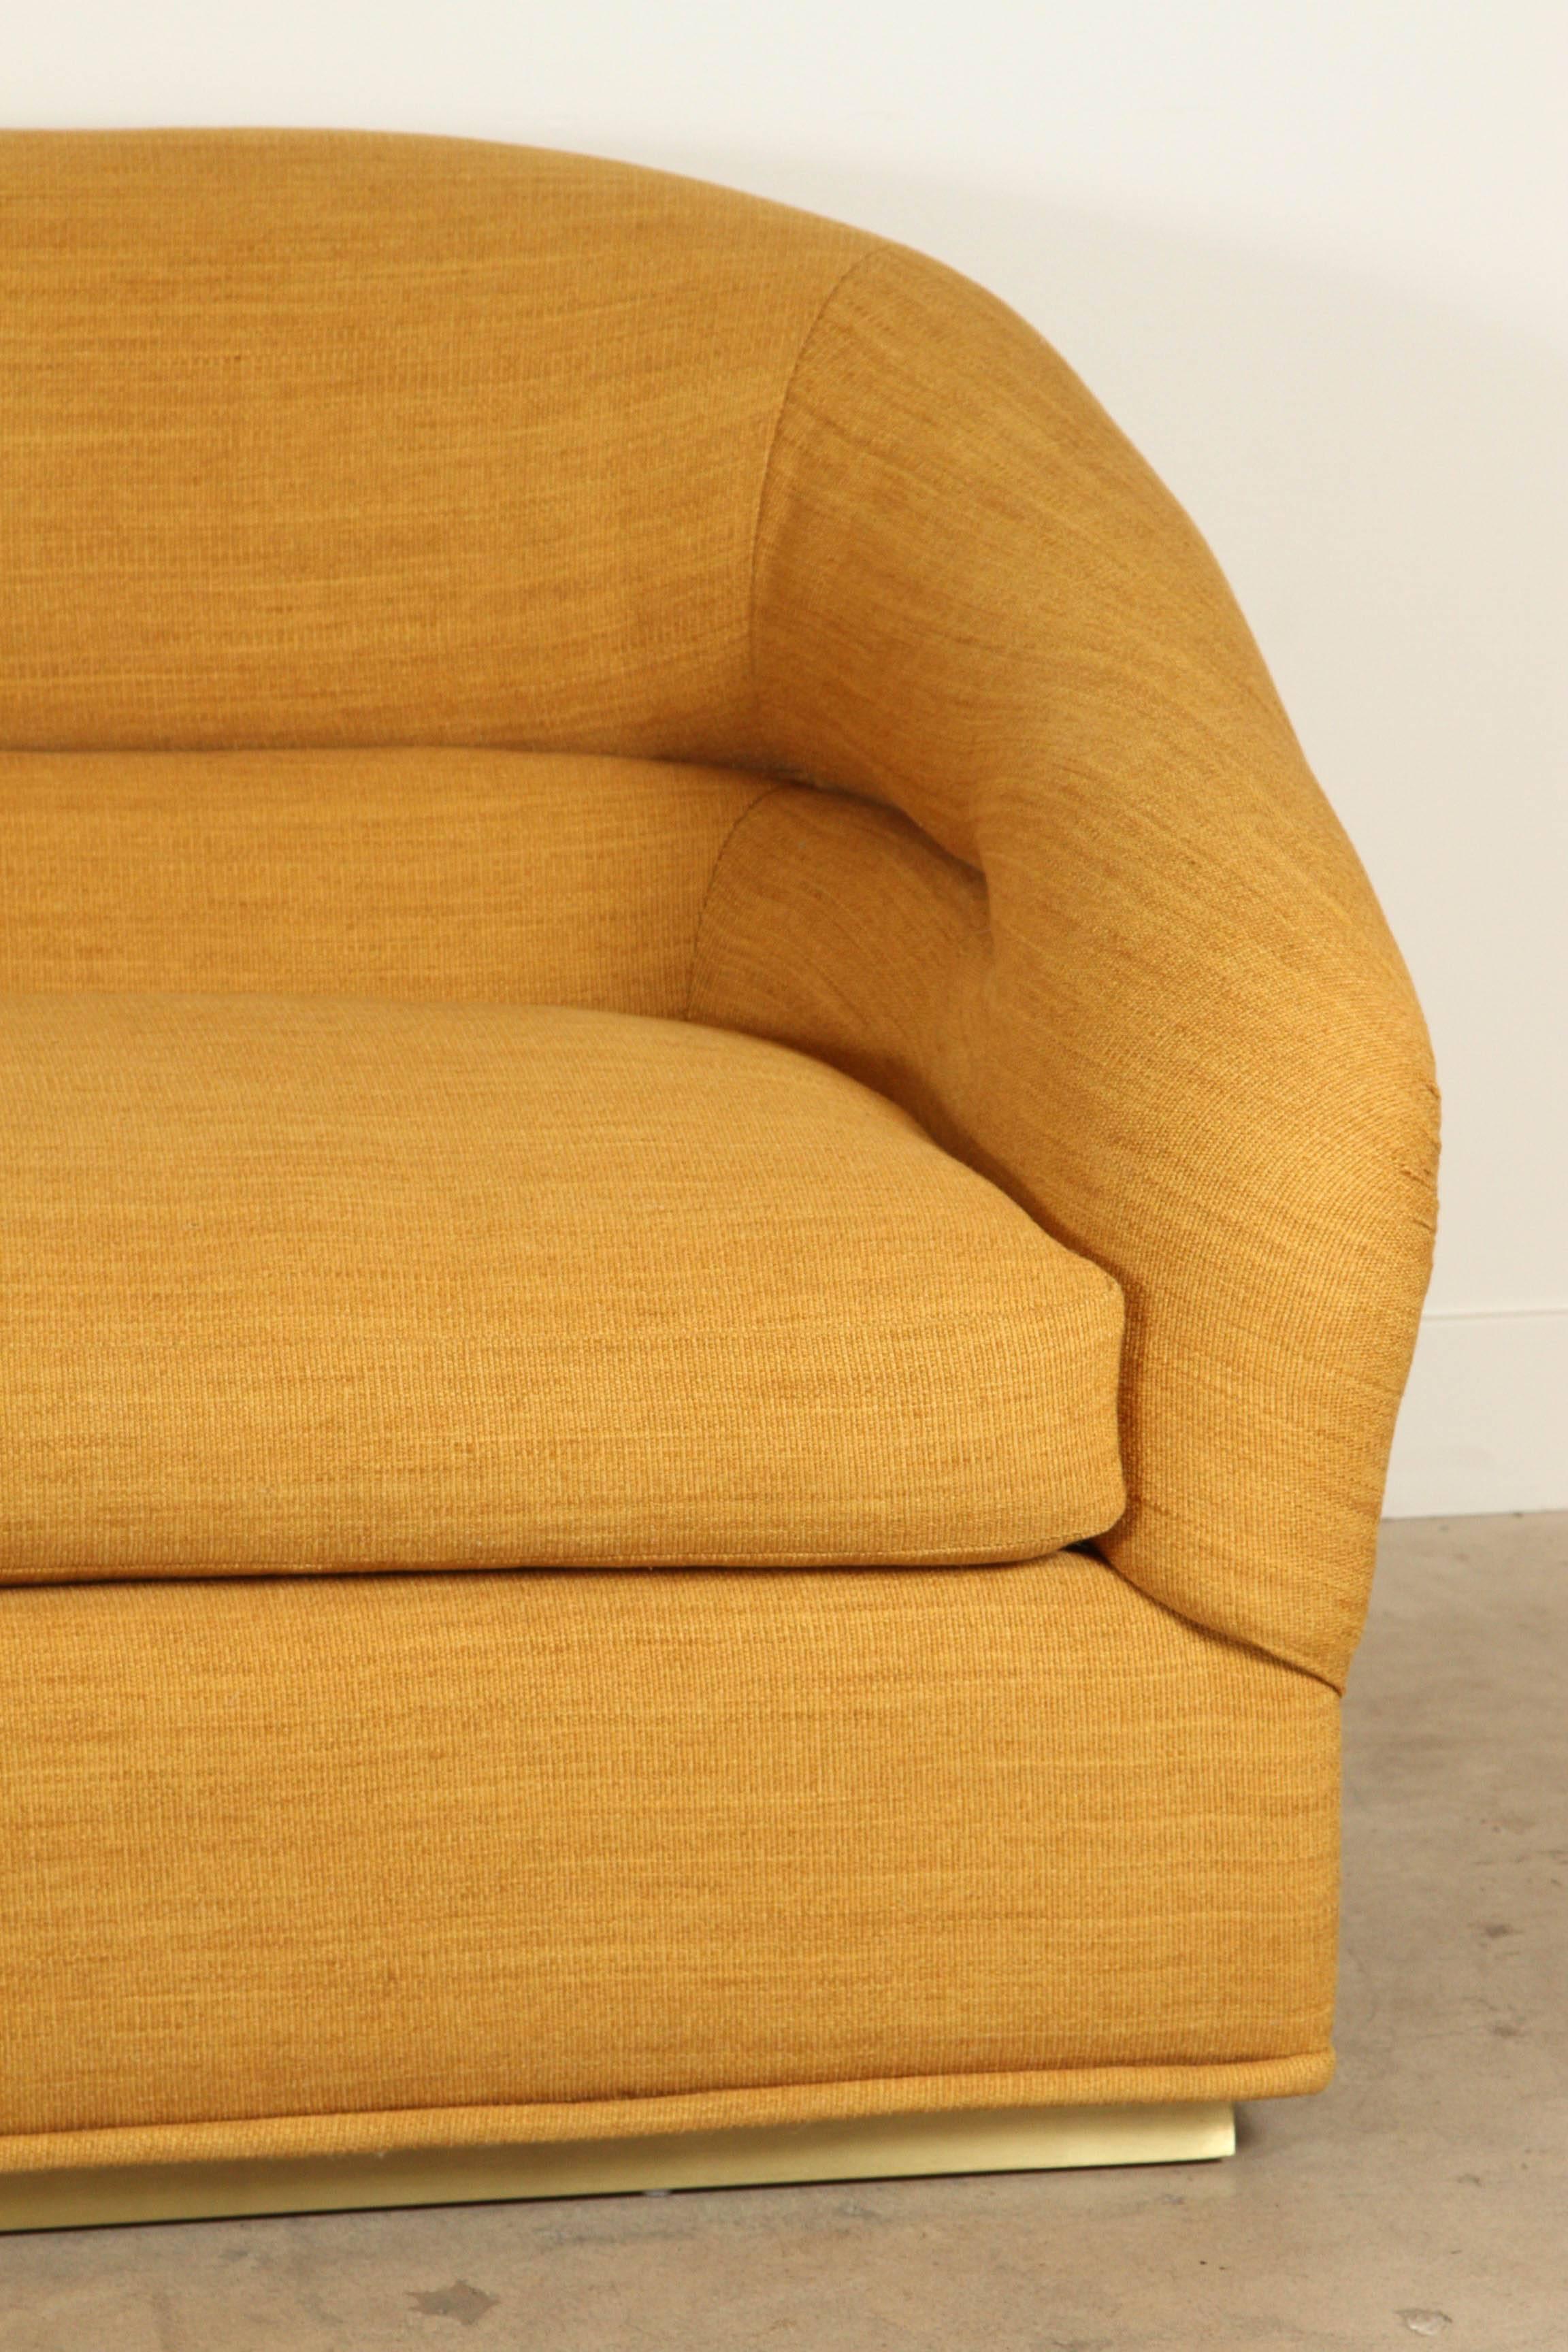 Huxley sofa by Lawson-Fenning. Upholstered in Zak + Fox 